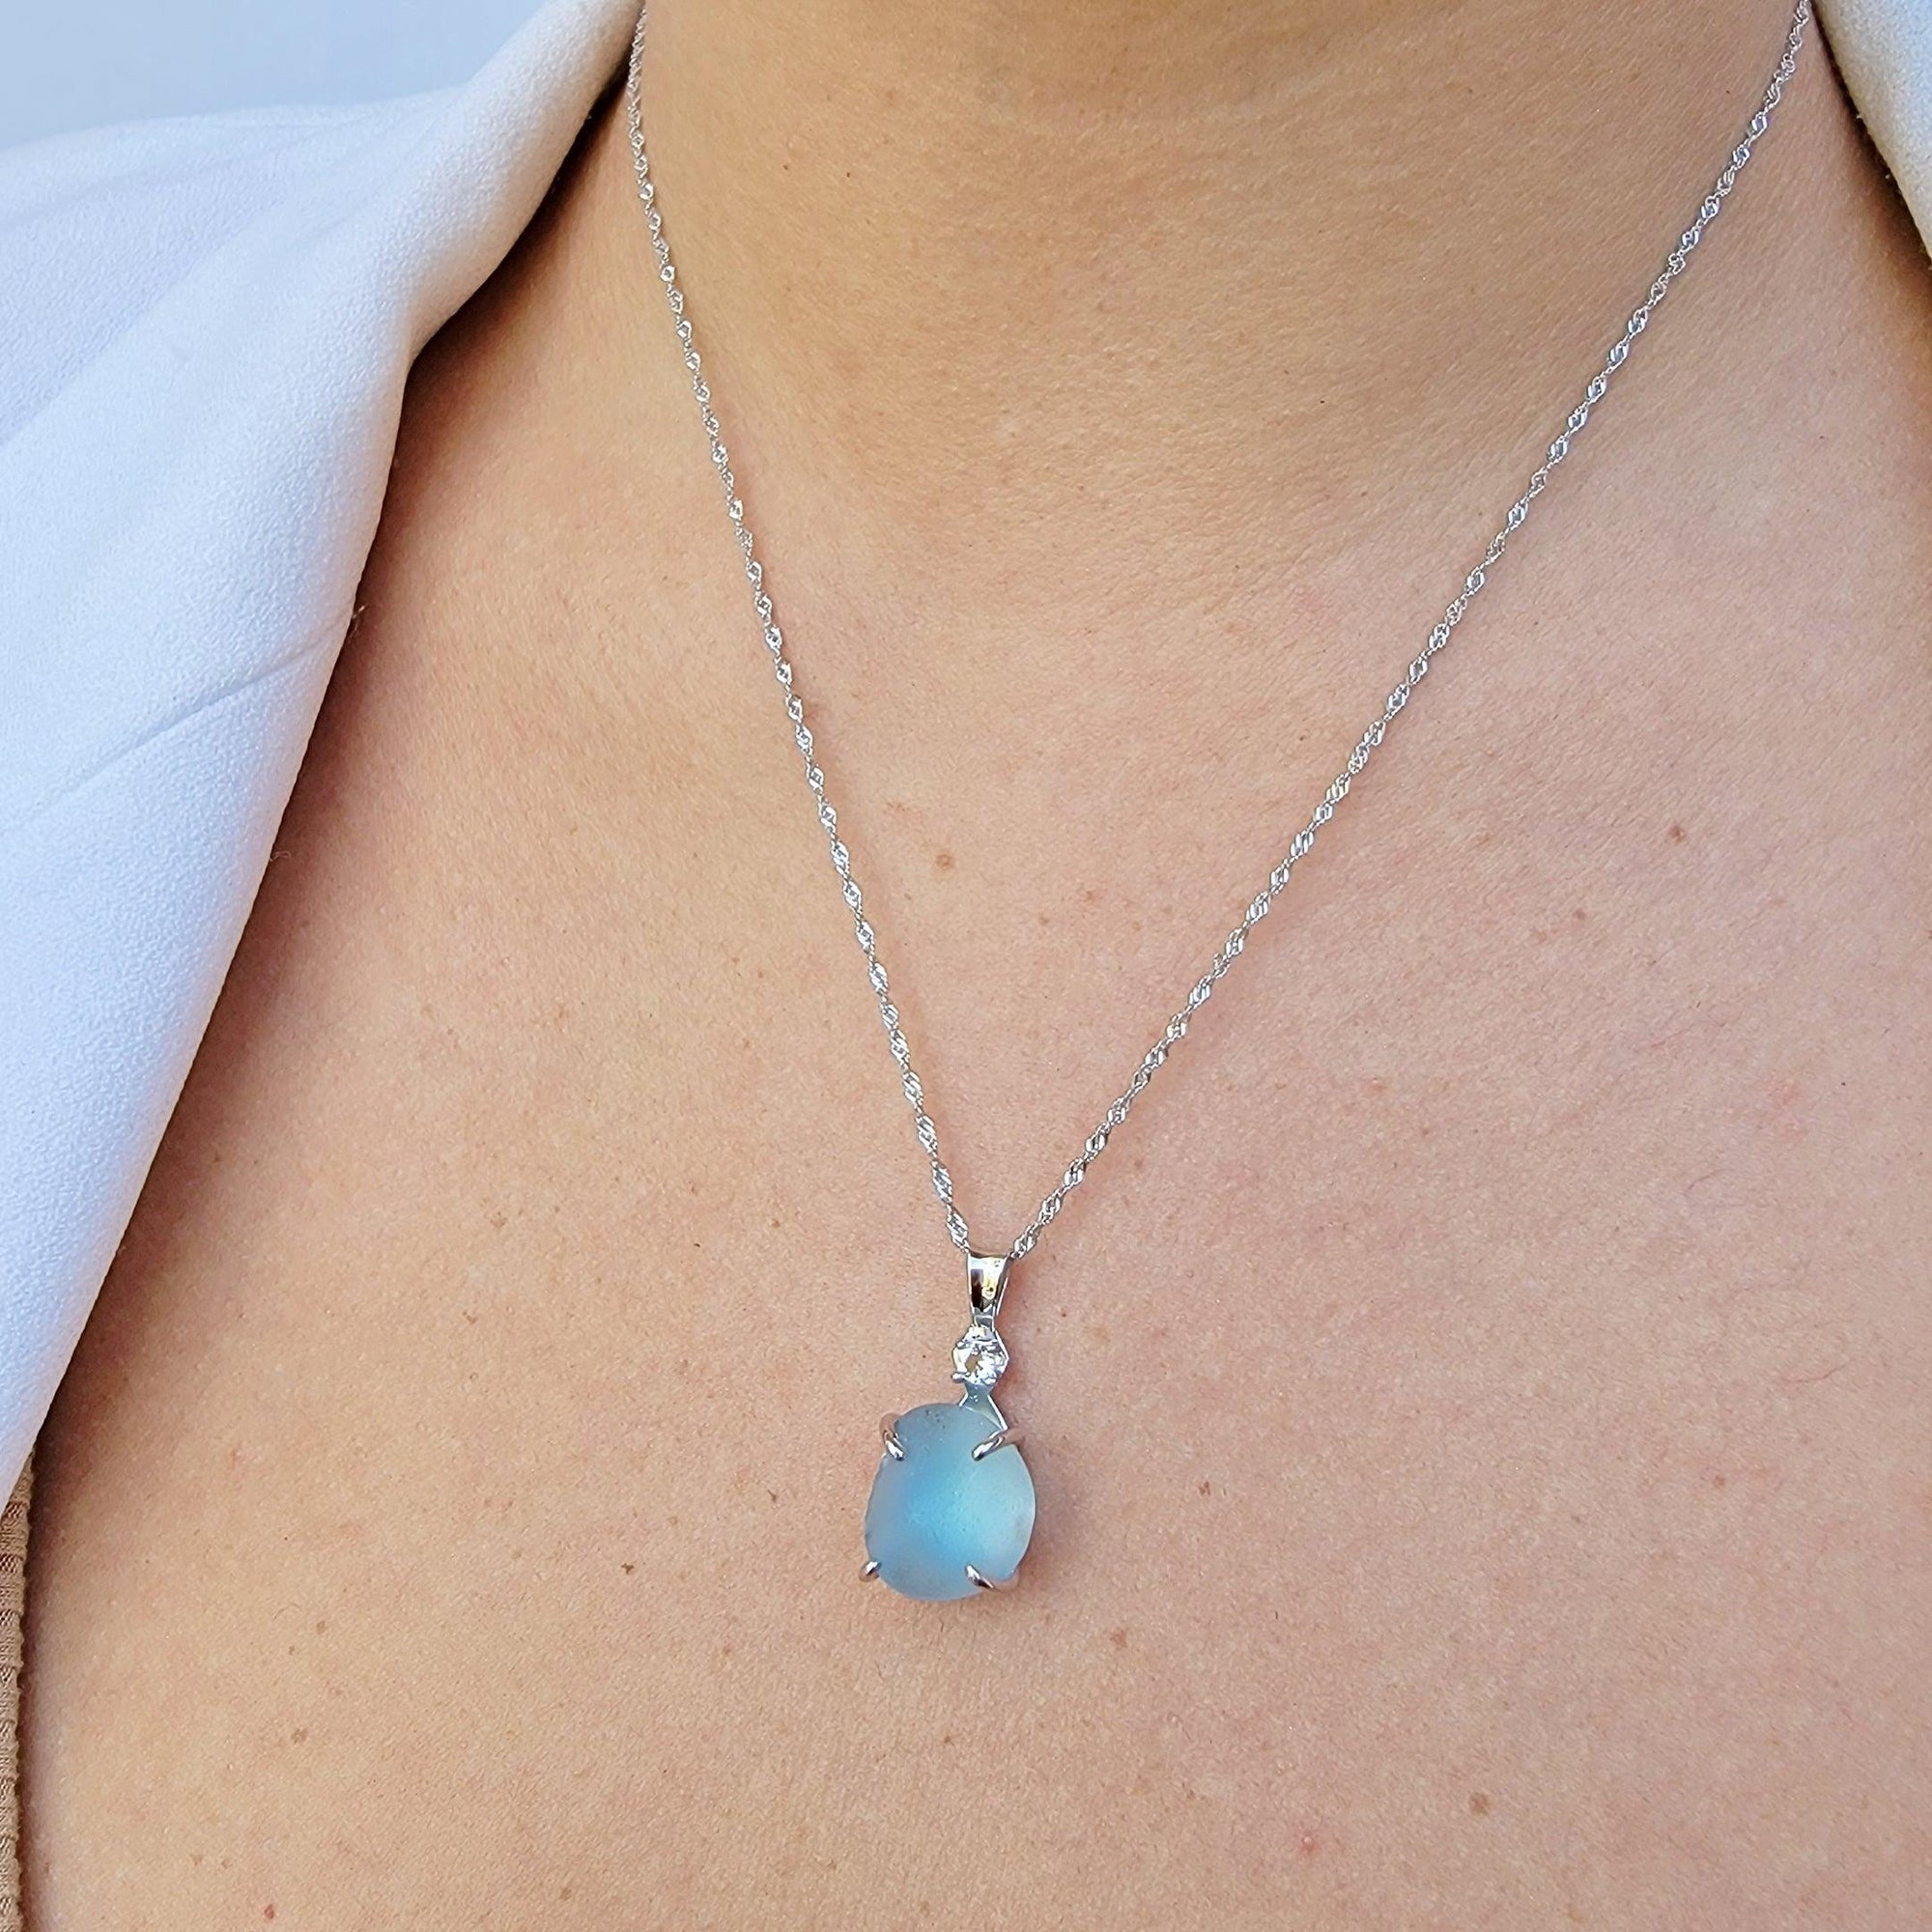 Raw Swiss Blue Topaz Necklace - Uniquelan Jewelry